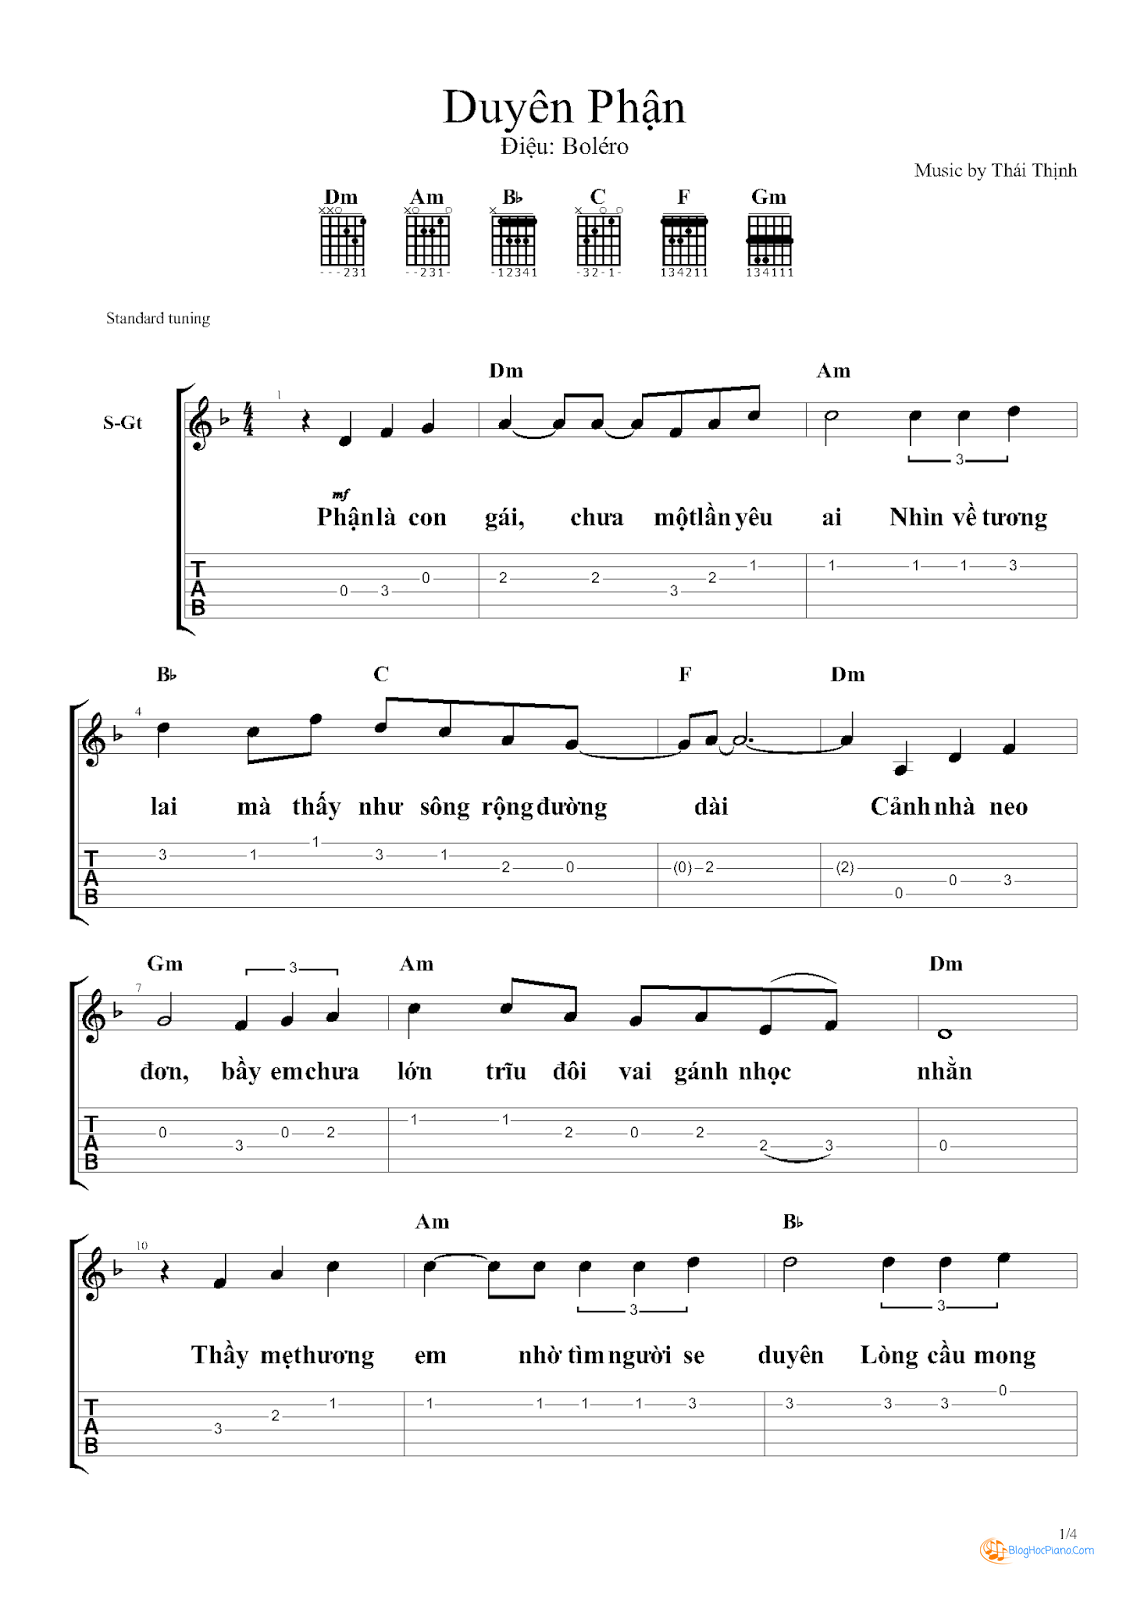 Duyên Phận Sheet Piano - Duyên Phận Hợp Âm Guitar Chuẩn